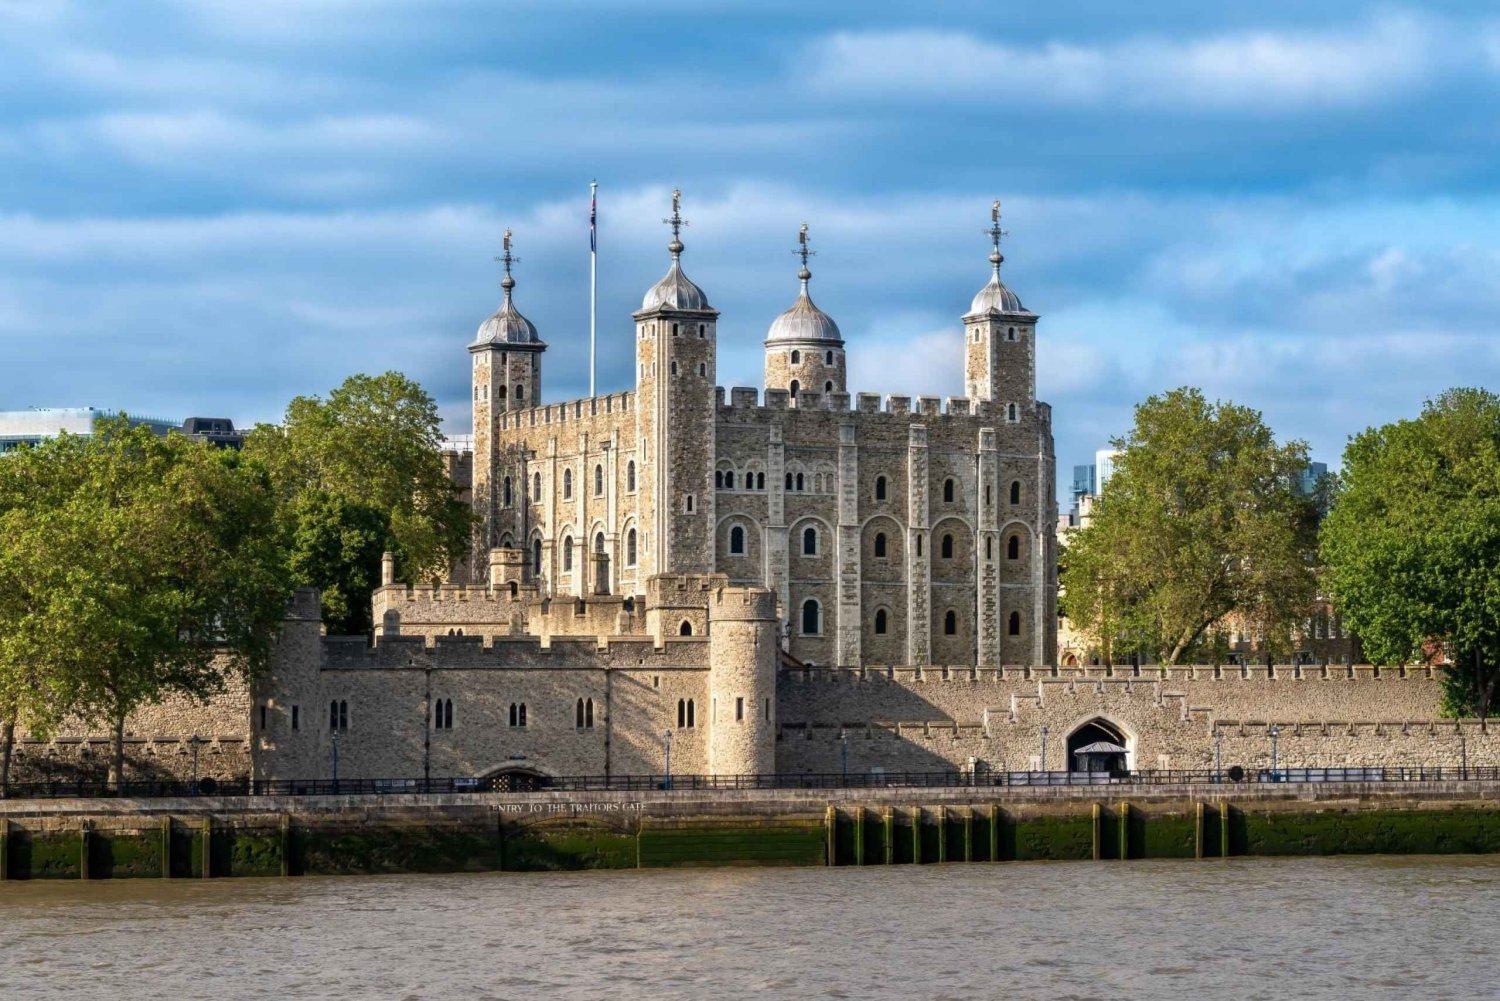 Rundvisning i Tower of London med entrébilletter og guide